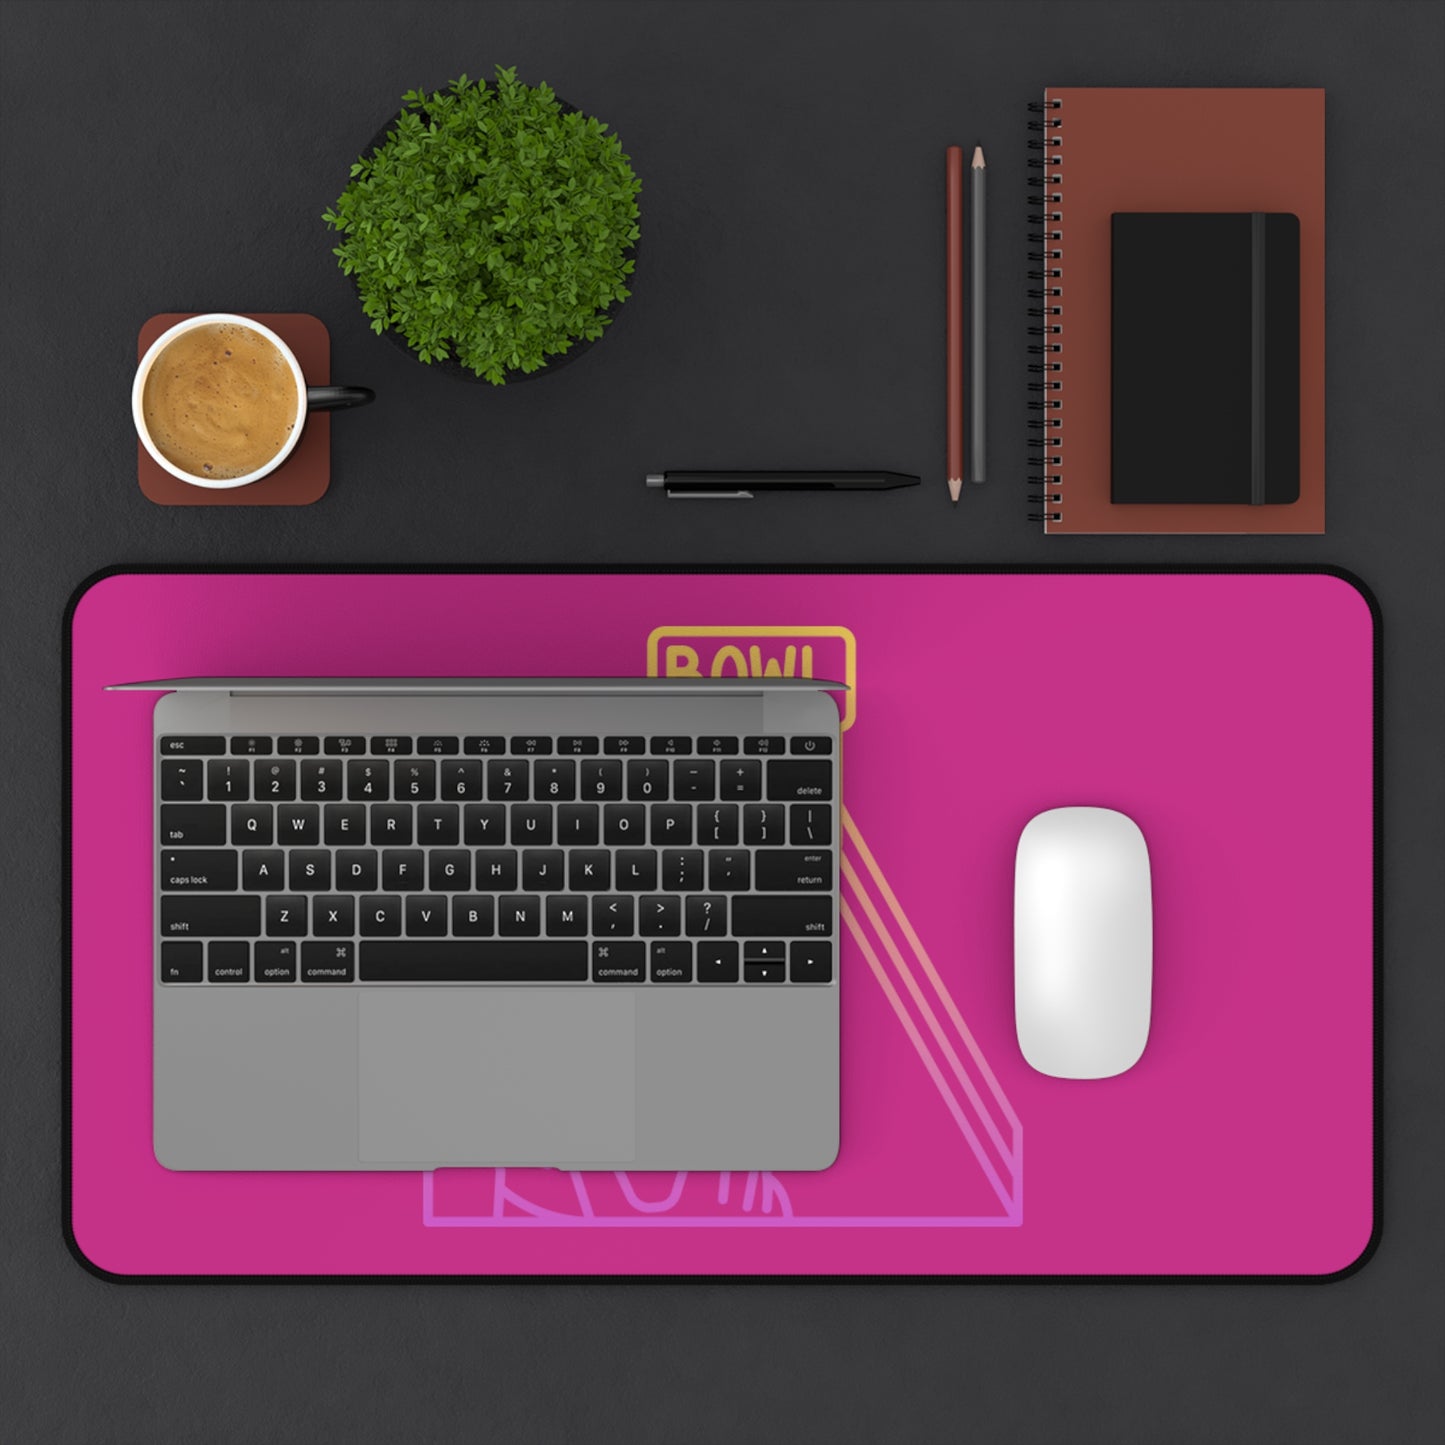 Desk Mat: Bowling Pink